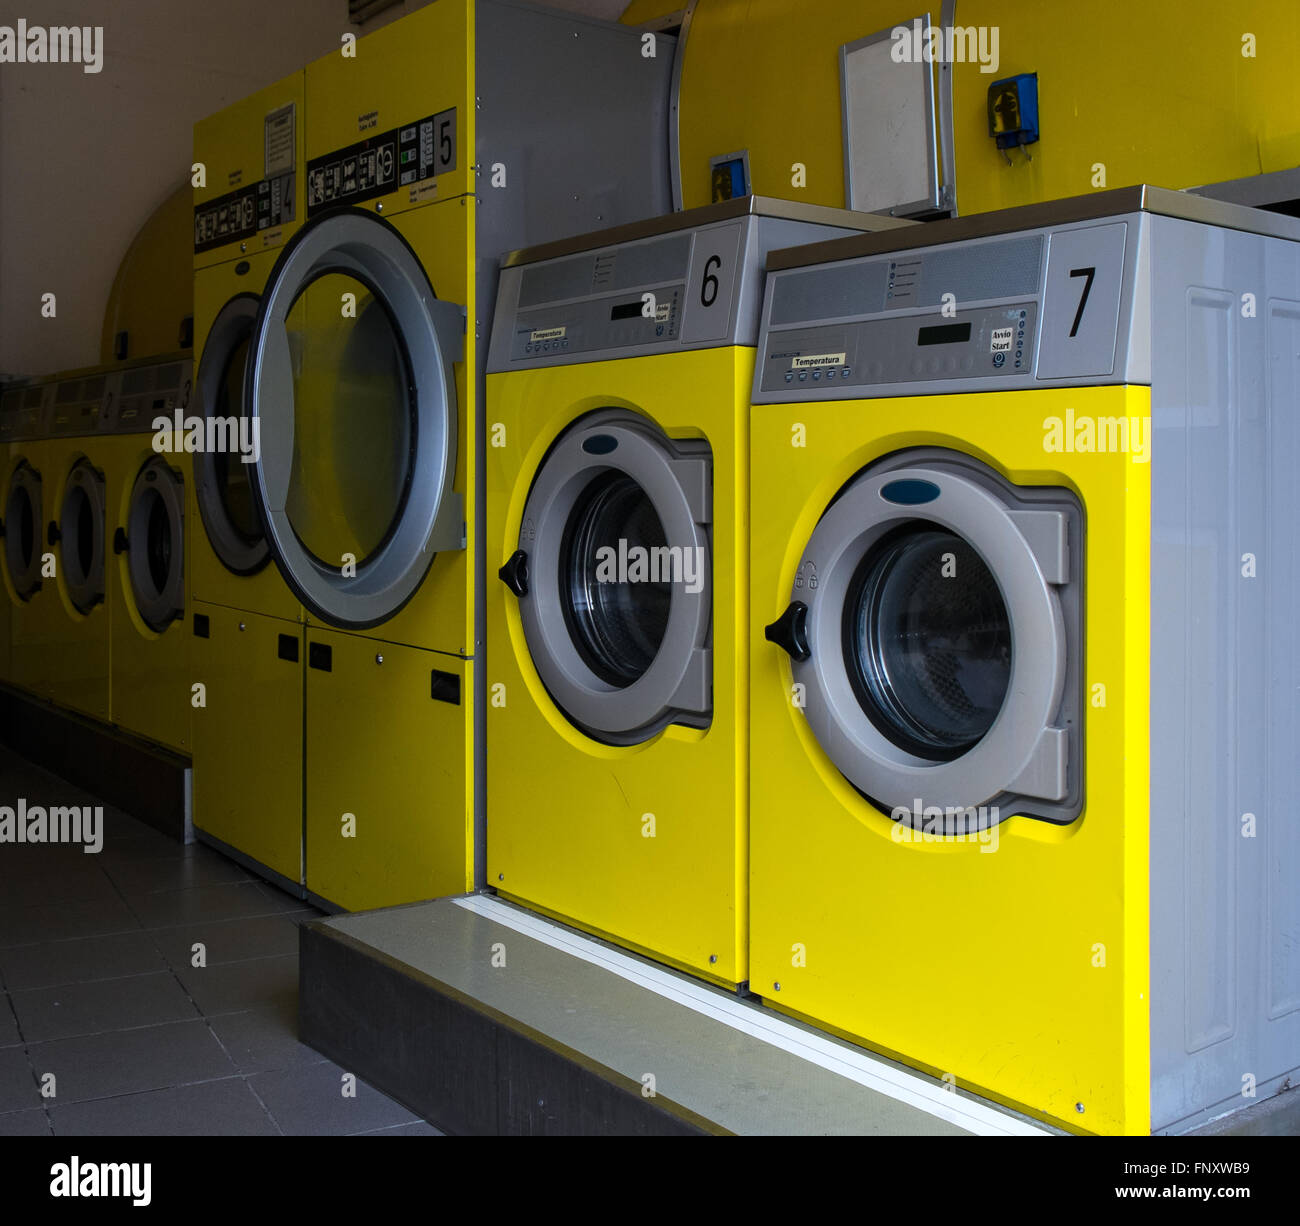 Gelbe Industriewaschmaschinen in einem öffentlichen Waschsalon Stockfoto